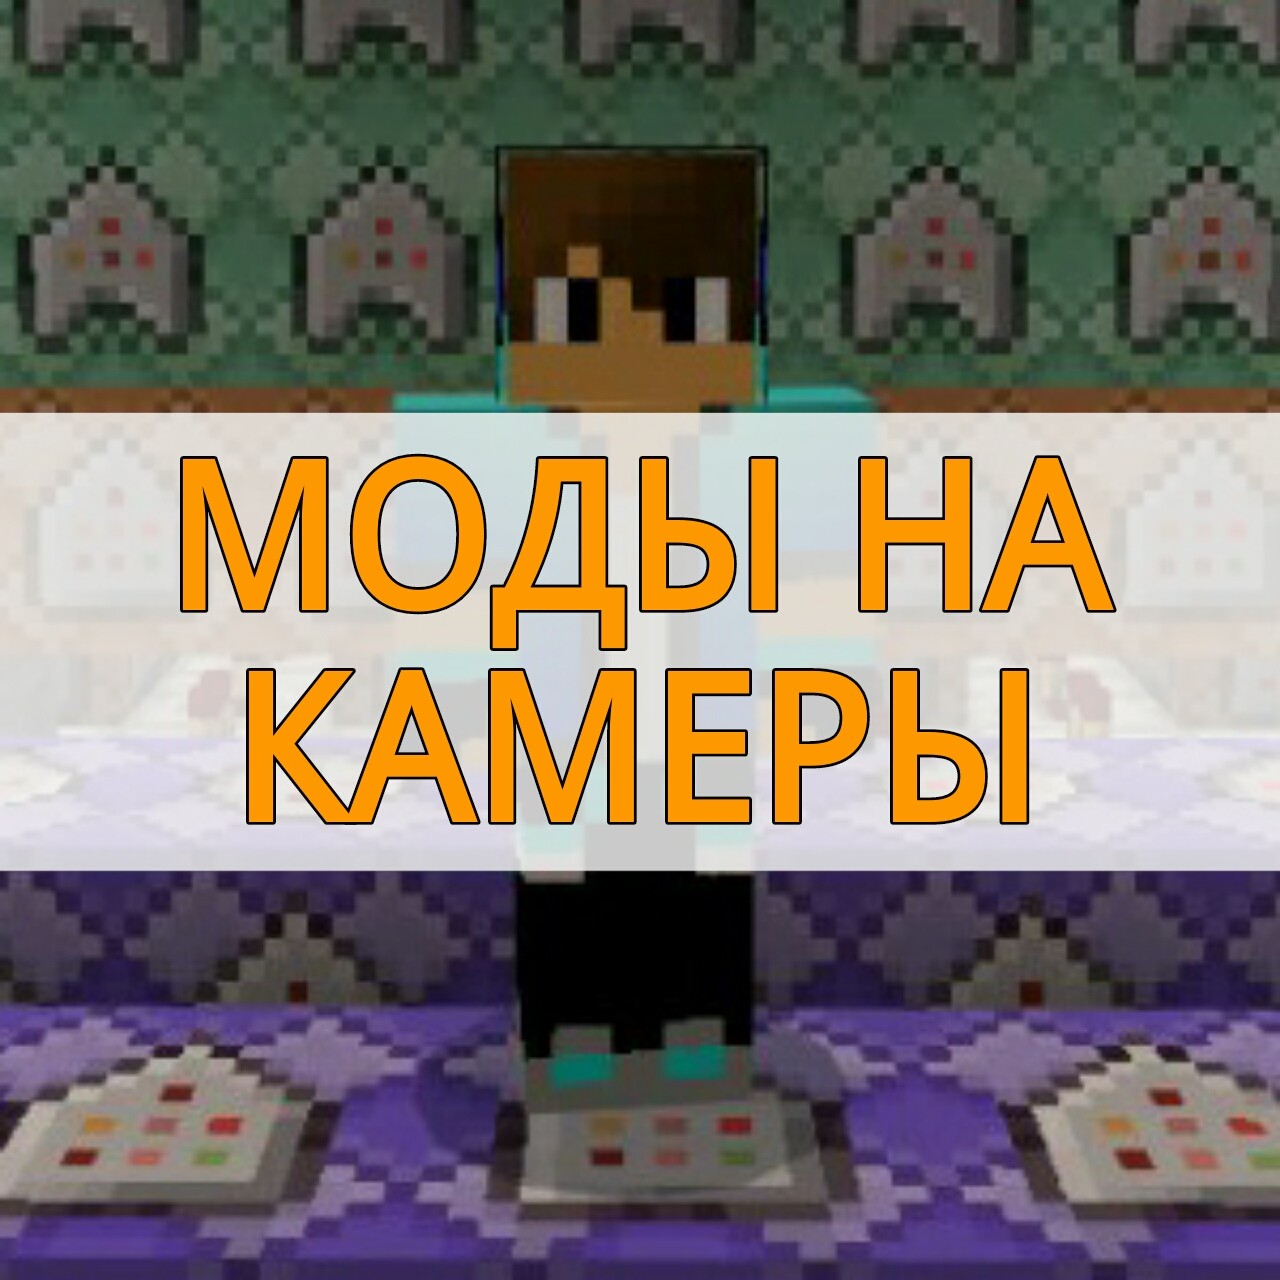 Ответы slep-kostroma.ru: Как сделать портал в майнкрафте на андроид? Minecraft PE билд 5